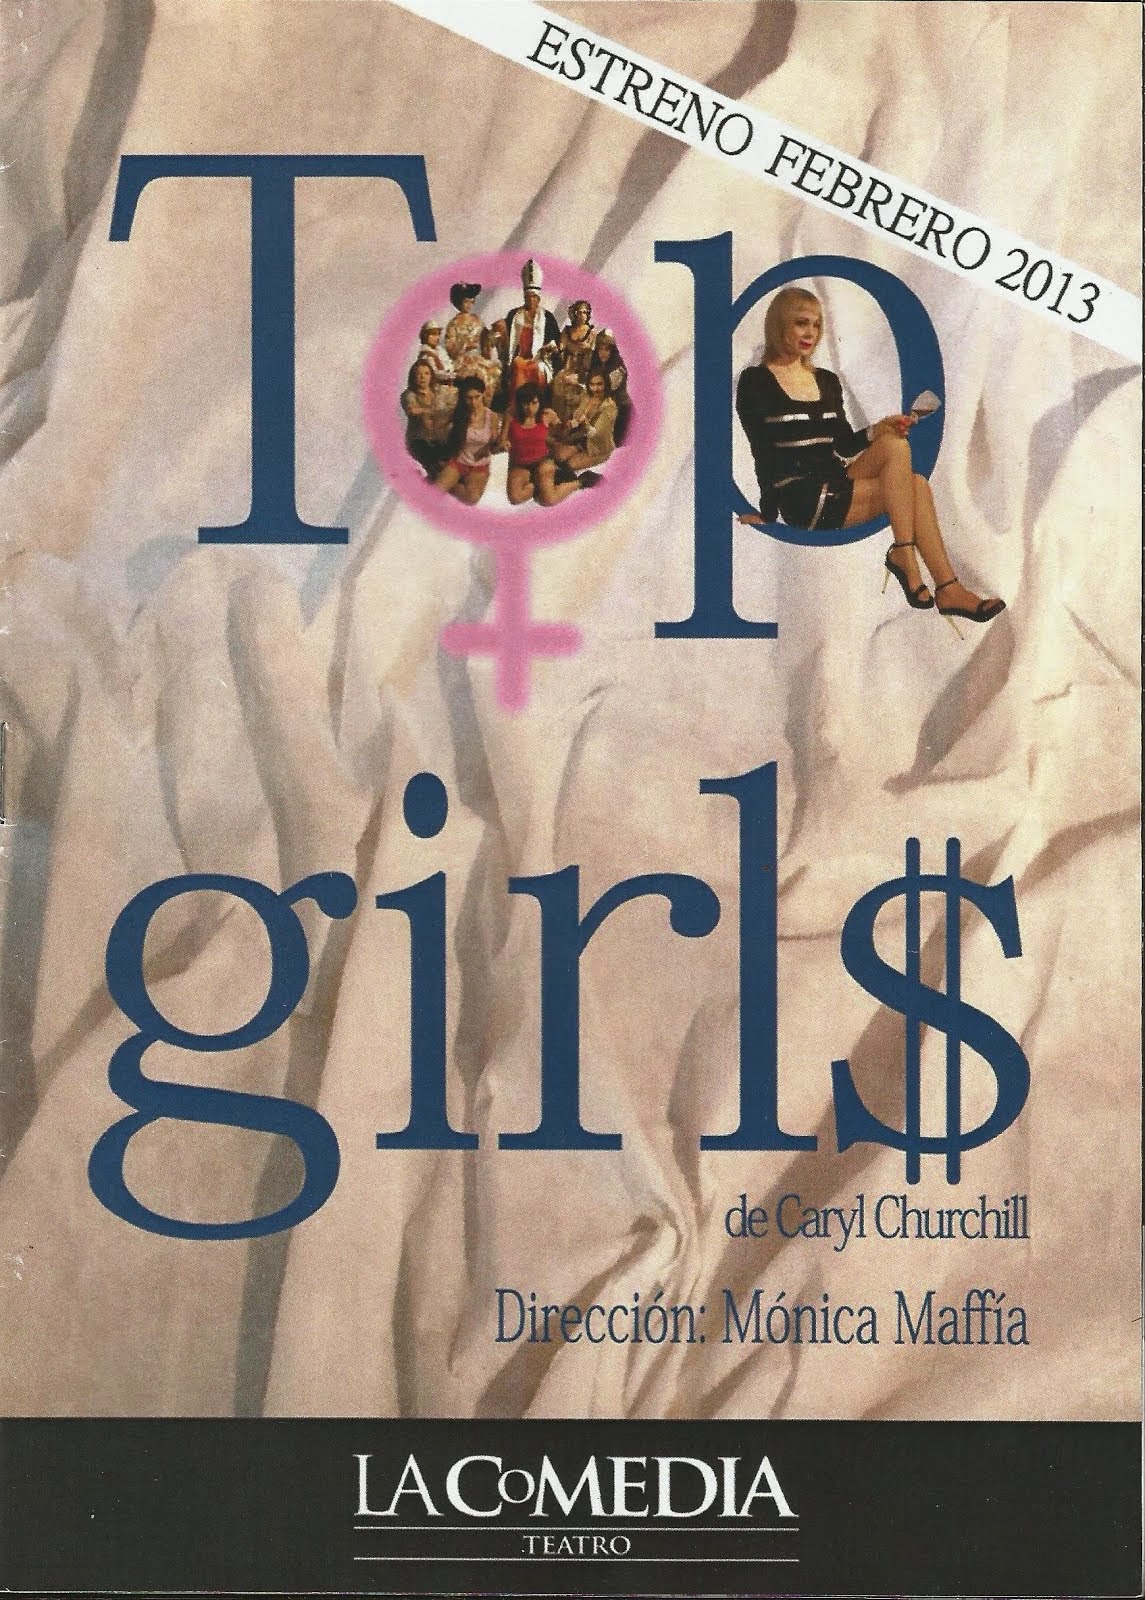 OBRA "TOP GIRLS" de Caryl Churchill, Teatro LA COMEDIA, BUENOS AIRES